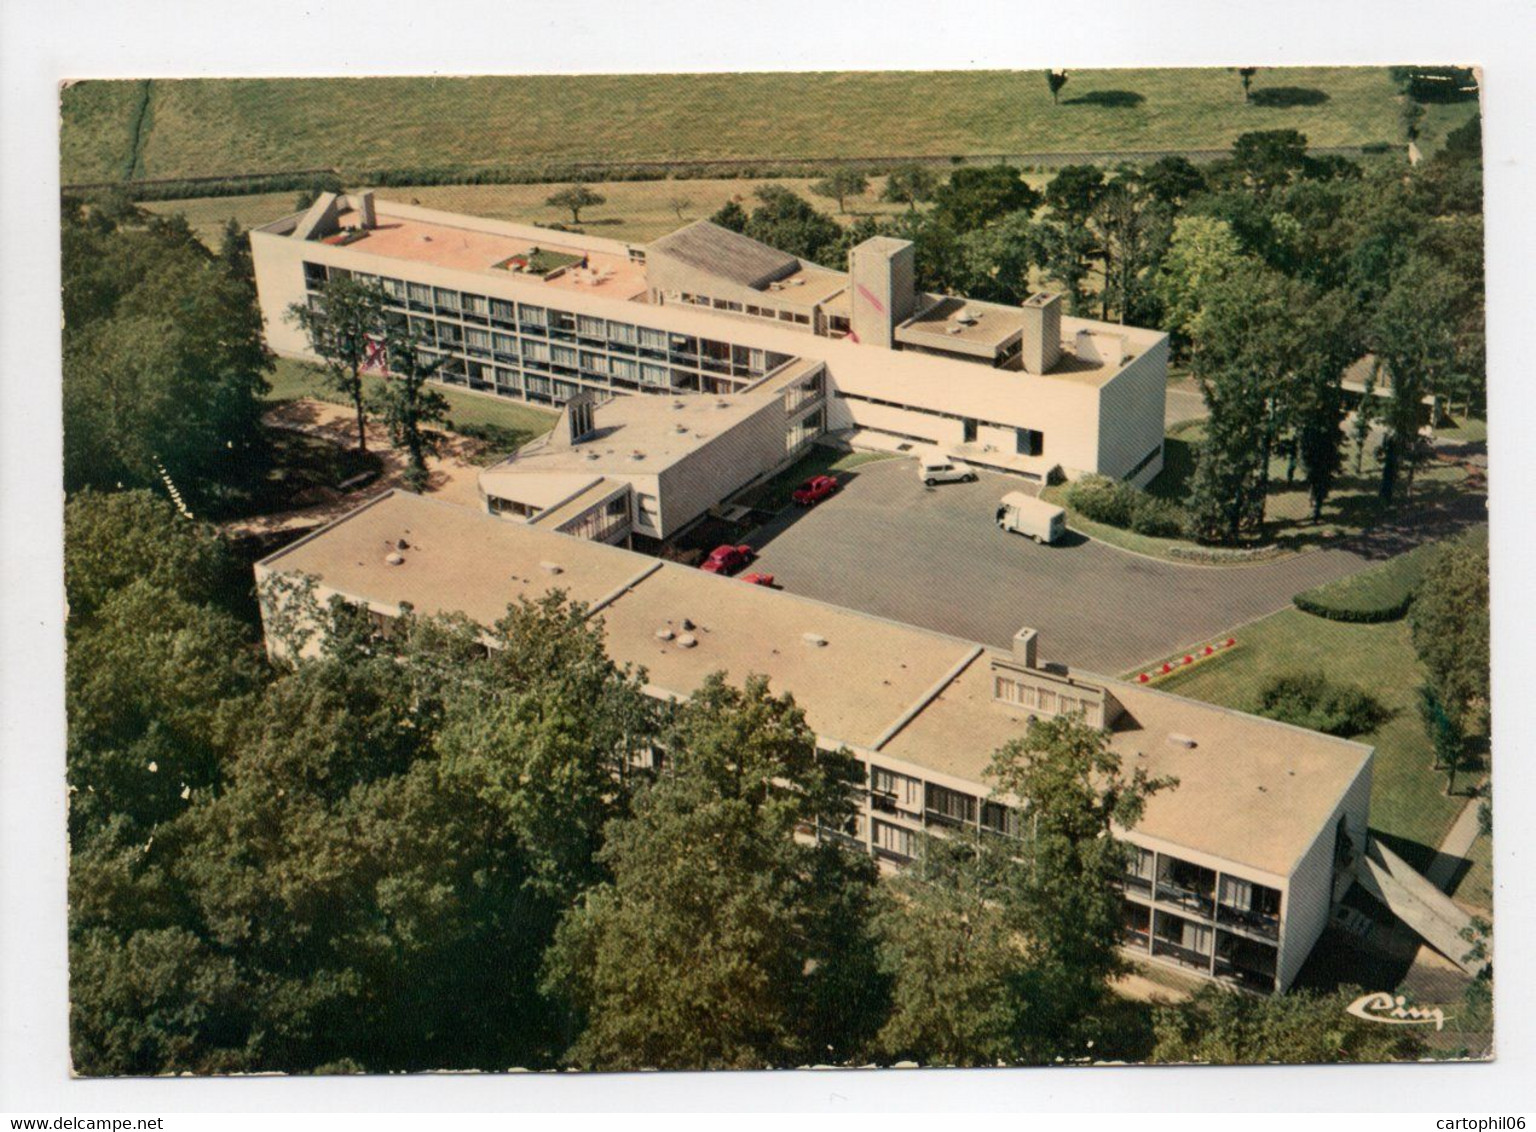 - CPM SOLESMES (72) - La Martinière - La Maison De Retraite (vue Aérienne 1980) - Photo CIM 282-86 - - Solesmes